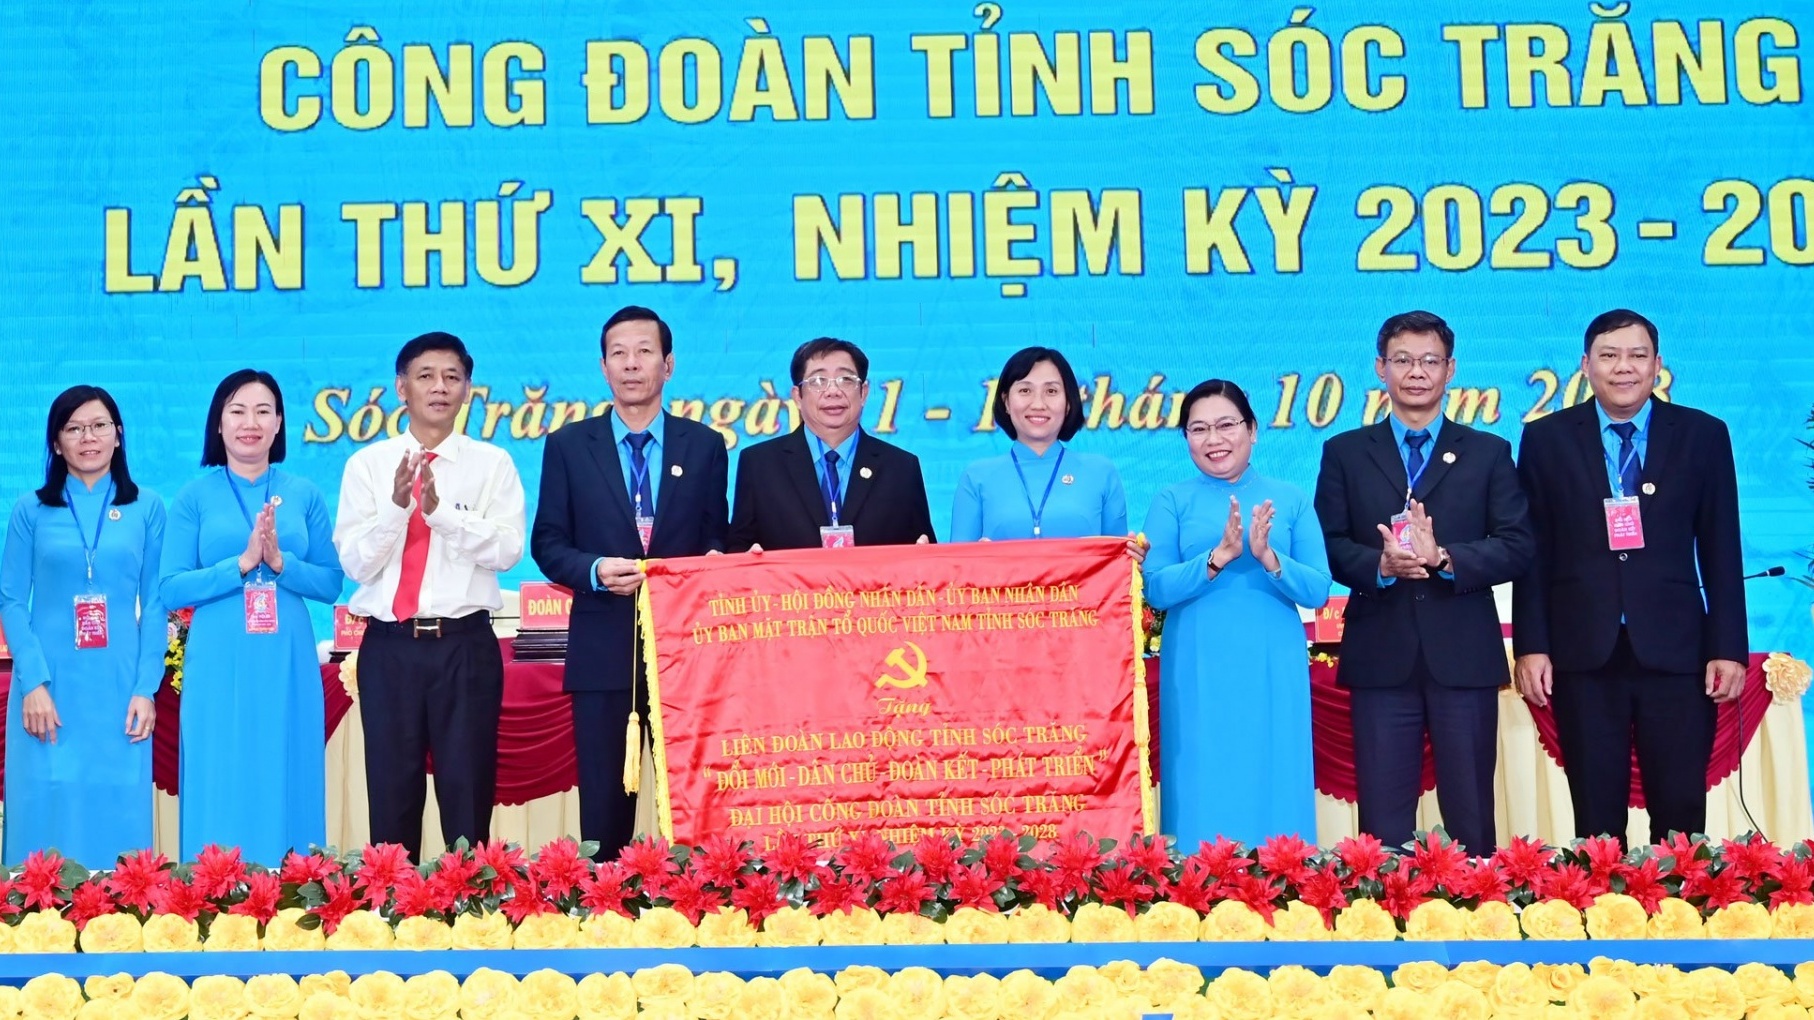 Đồng chí Nguyễn Thanh Sơn tái đắc cử Chủ tịch LĐLĐ tỉnh Sóc Trăng